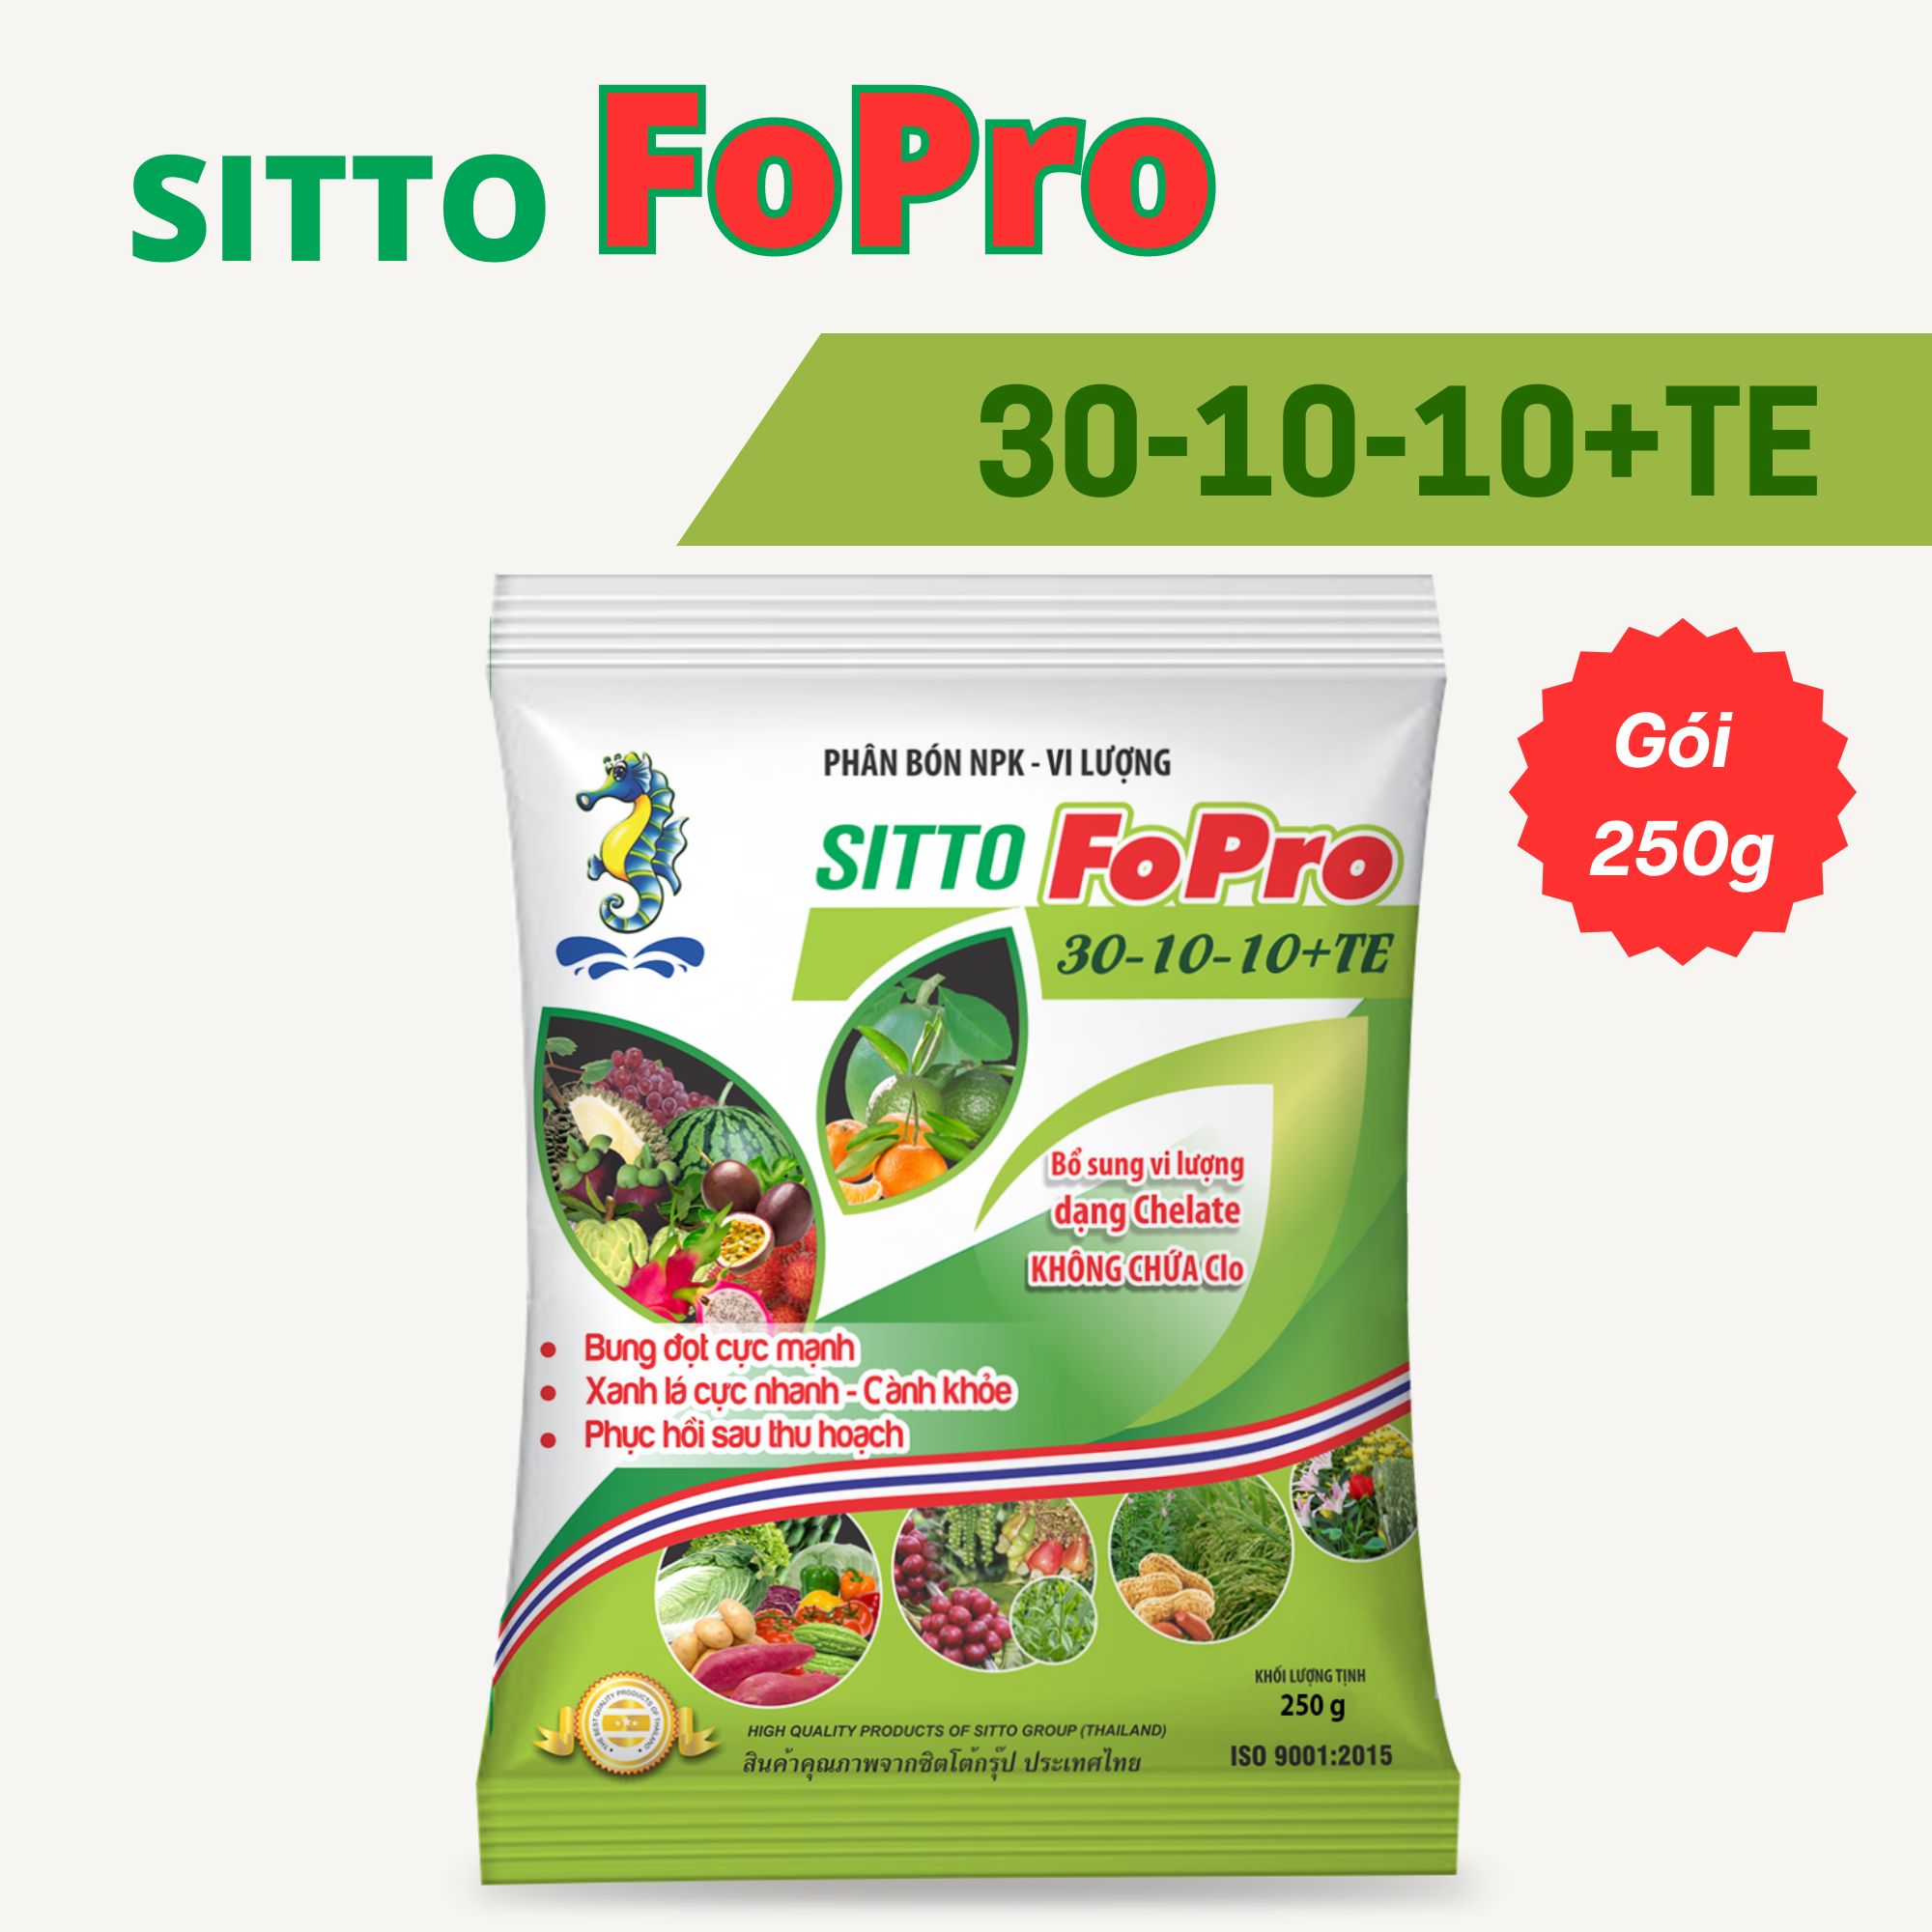 Phân bón Sitto Fopro 30-10-10+TE - Xanh lá cực nhanh, phục hồi sau thu hoạch